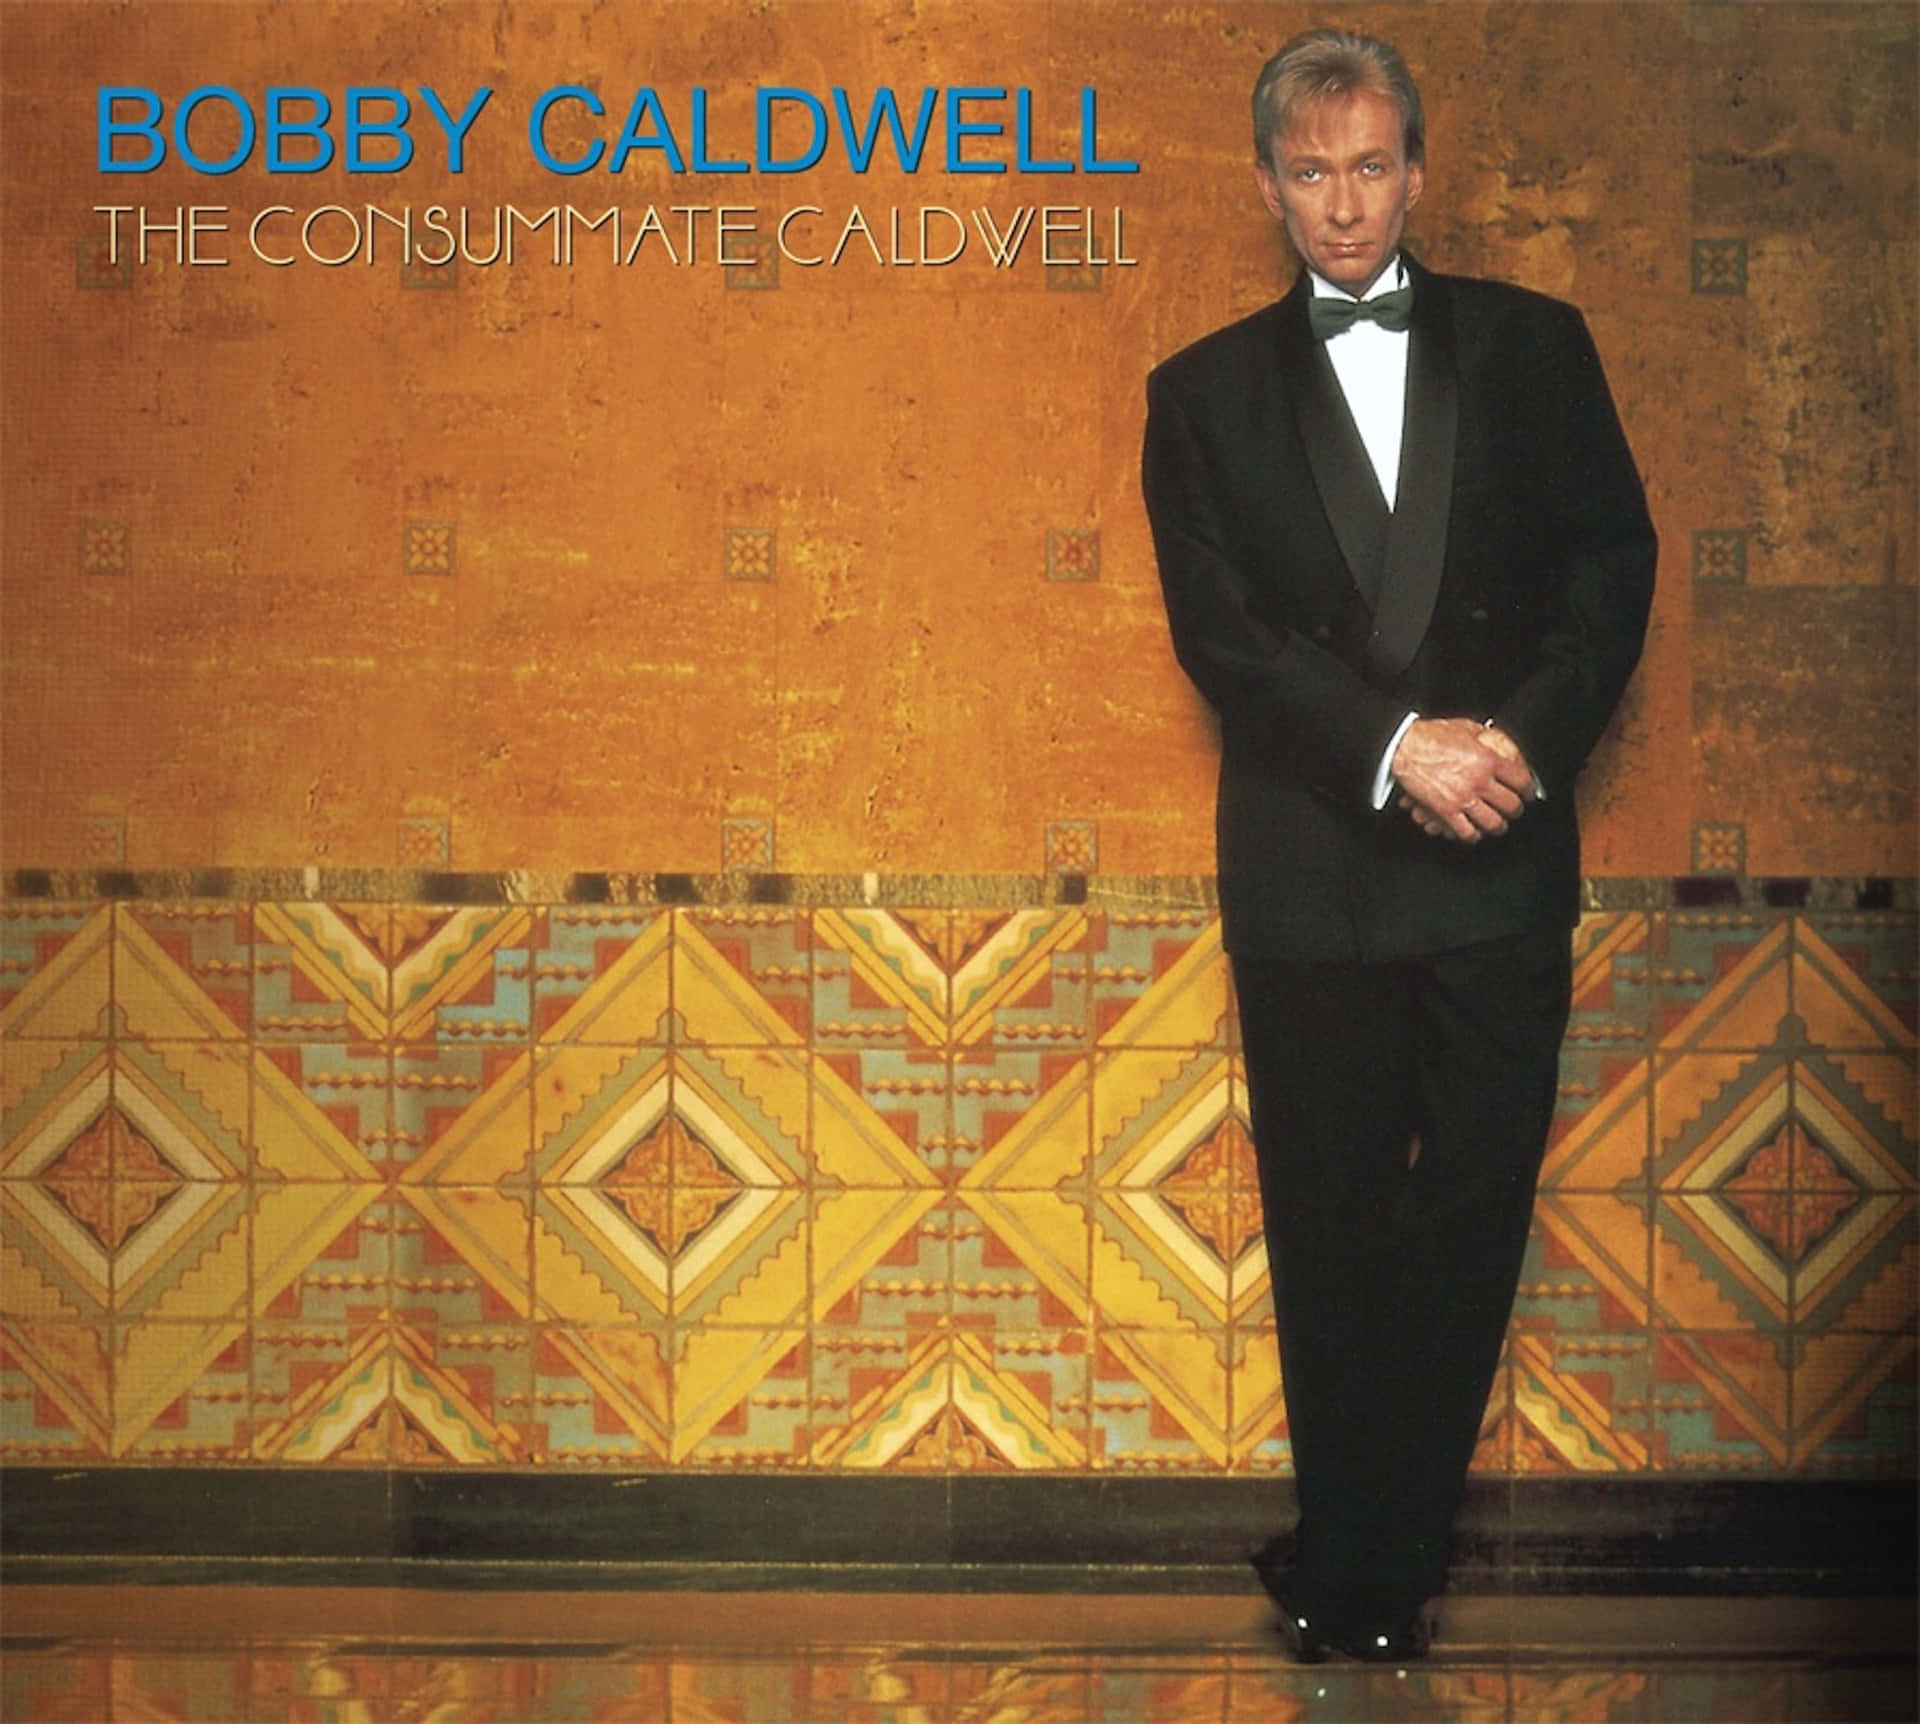 Legendary Singer Bobby Caldwell in Concert Wallpaper